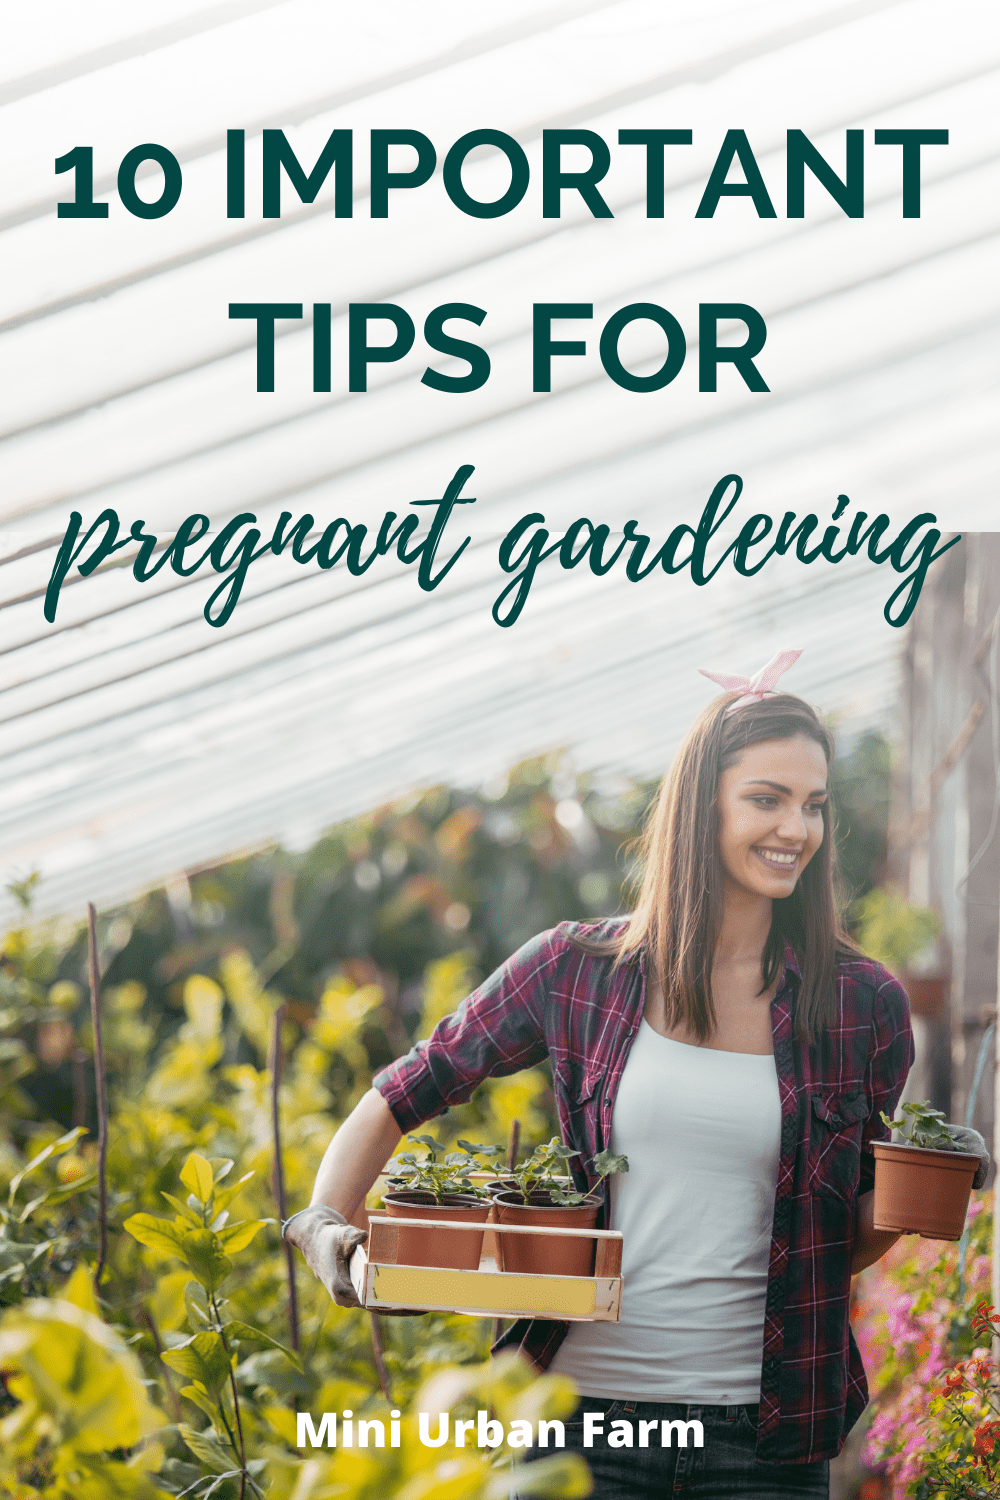 10 Pregnant Gardening Tips to Keep Baby Safe - Mini Urban Farm